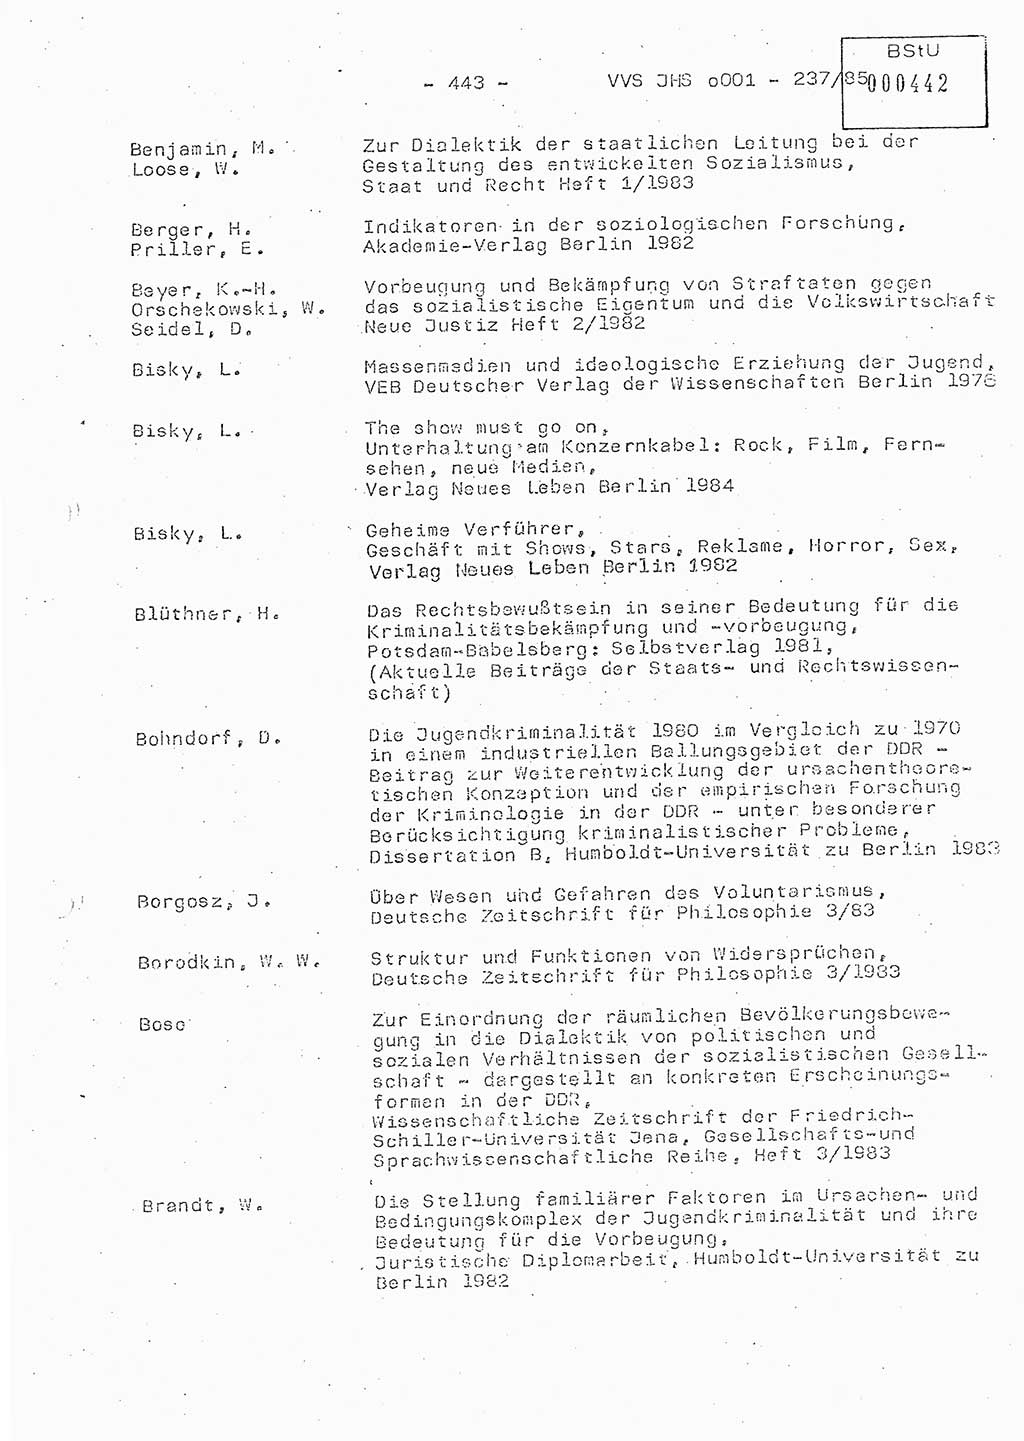 Dissertation Oberstleutnant Peter Jakulski (JHS), Oberstleutnat Christian Rudolph (HA Ⅸ), Major Horst Böttger (ZMD), Major Wolfgang Grüneberg (JHS), Major Albert Meutsch (JHS), Ministerium für Staatssicherheit (MfS) [Deutsche Demokratische Republik (DDR)], Juristische Hochschule (JHS), Vertrauliche Verschlußsache (VVS) o001-237/85, Potsdam 1985, Seite 443 (Diss. MfS DDR JHS VVS o001-237/85 1985, S. 443)